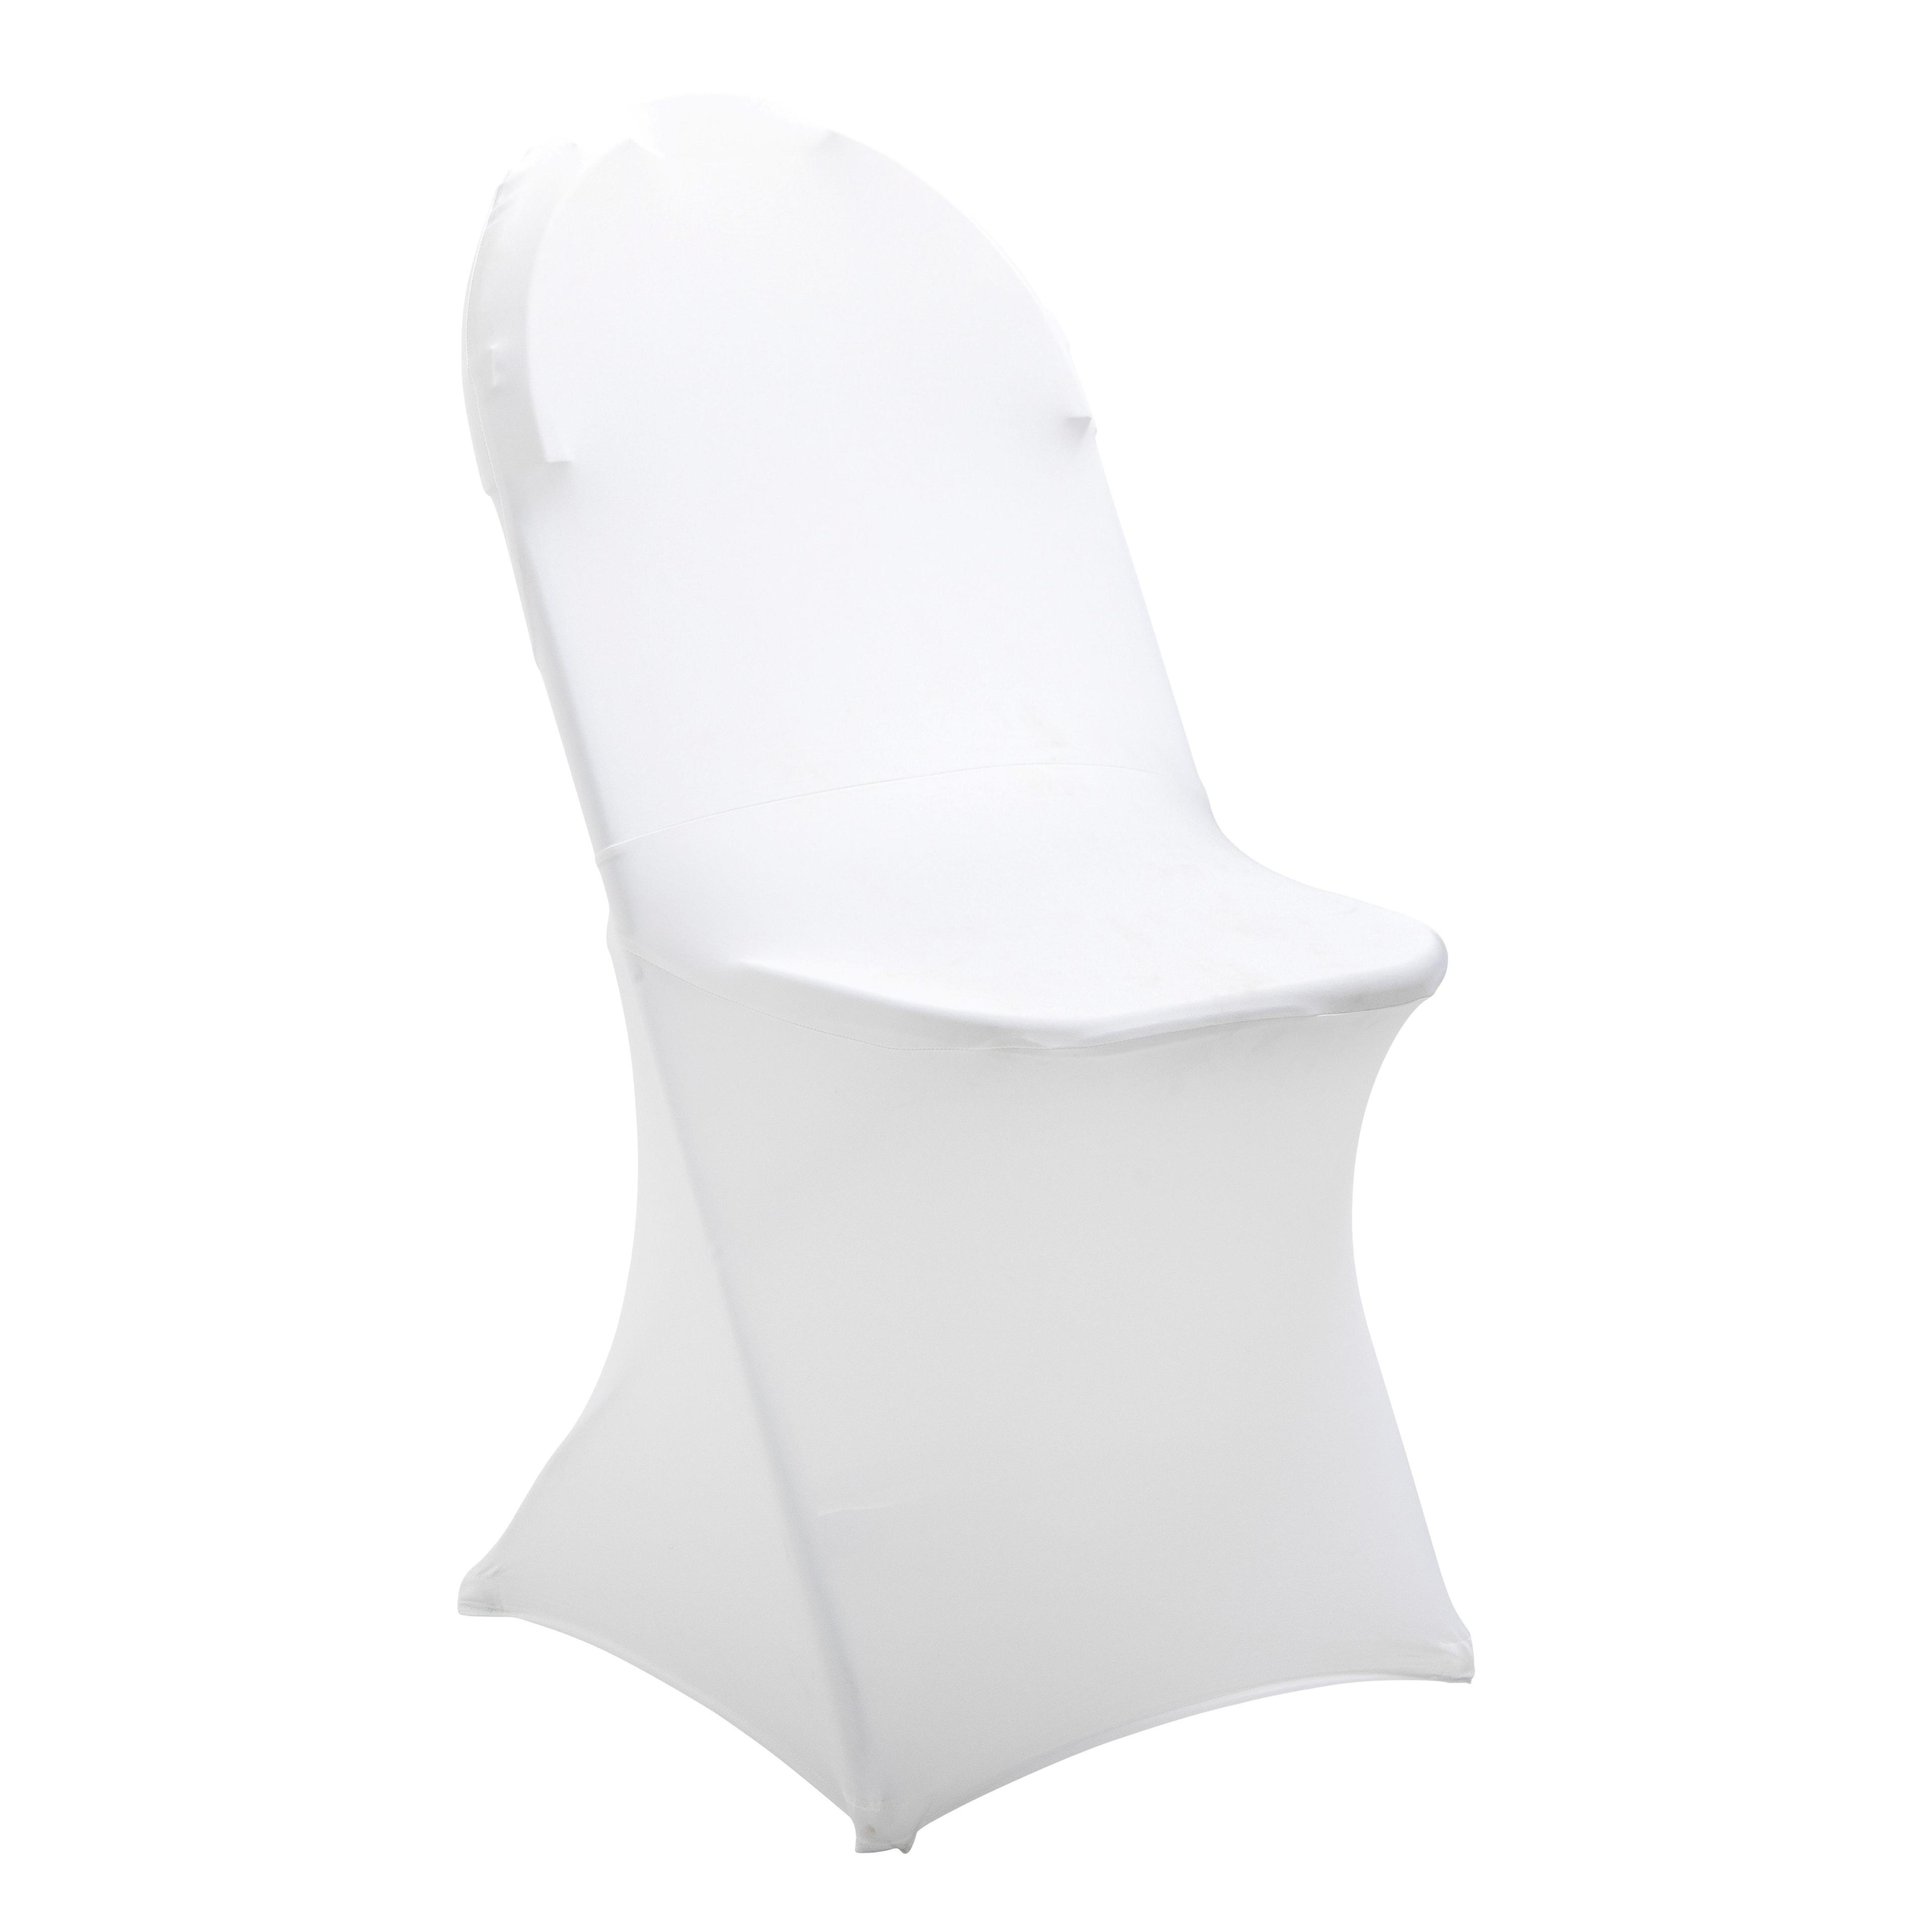 Housse blanche de chaise pliante élasthanne et polyester